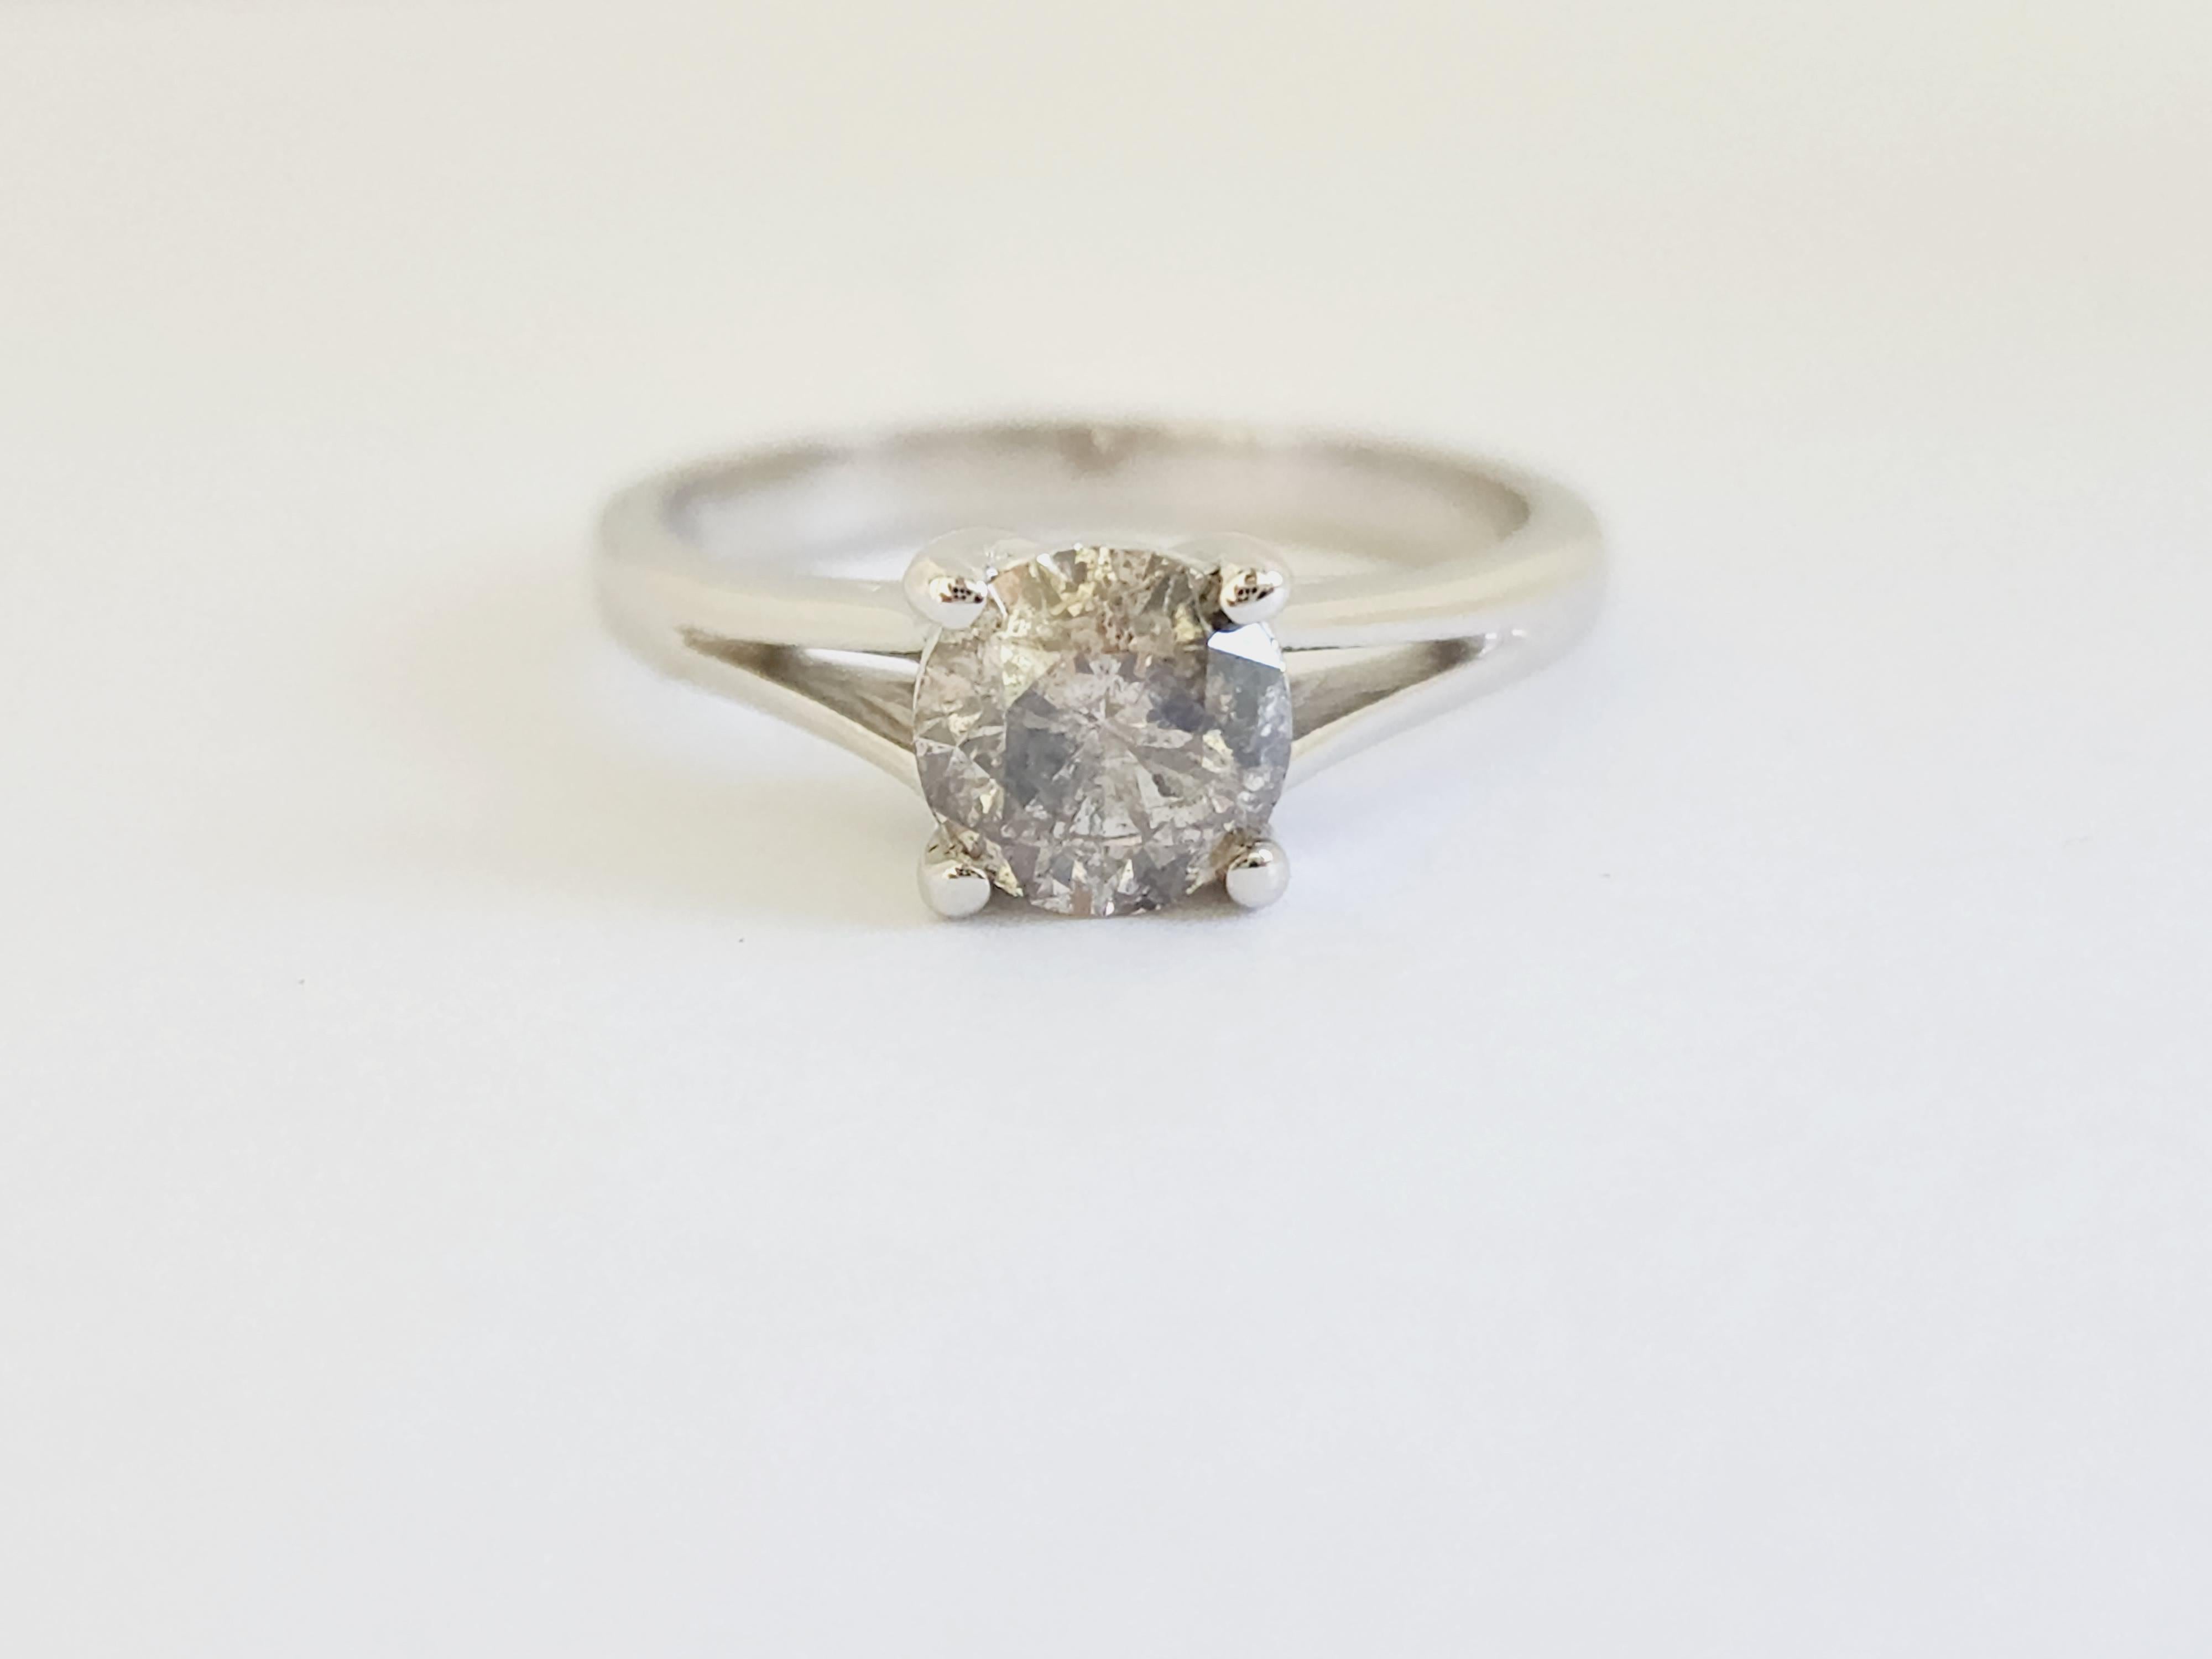 Natural IGI 1.01 Carat Gray Round Diamond Ring 14 Karat White Gold. Set on 4-prong 14K white gold ring.
Ring size: 6.5